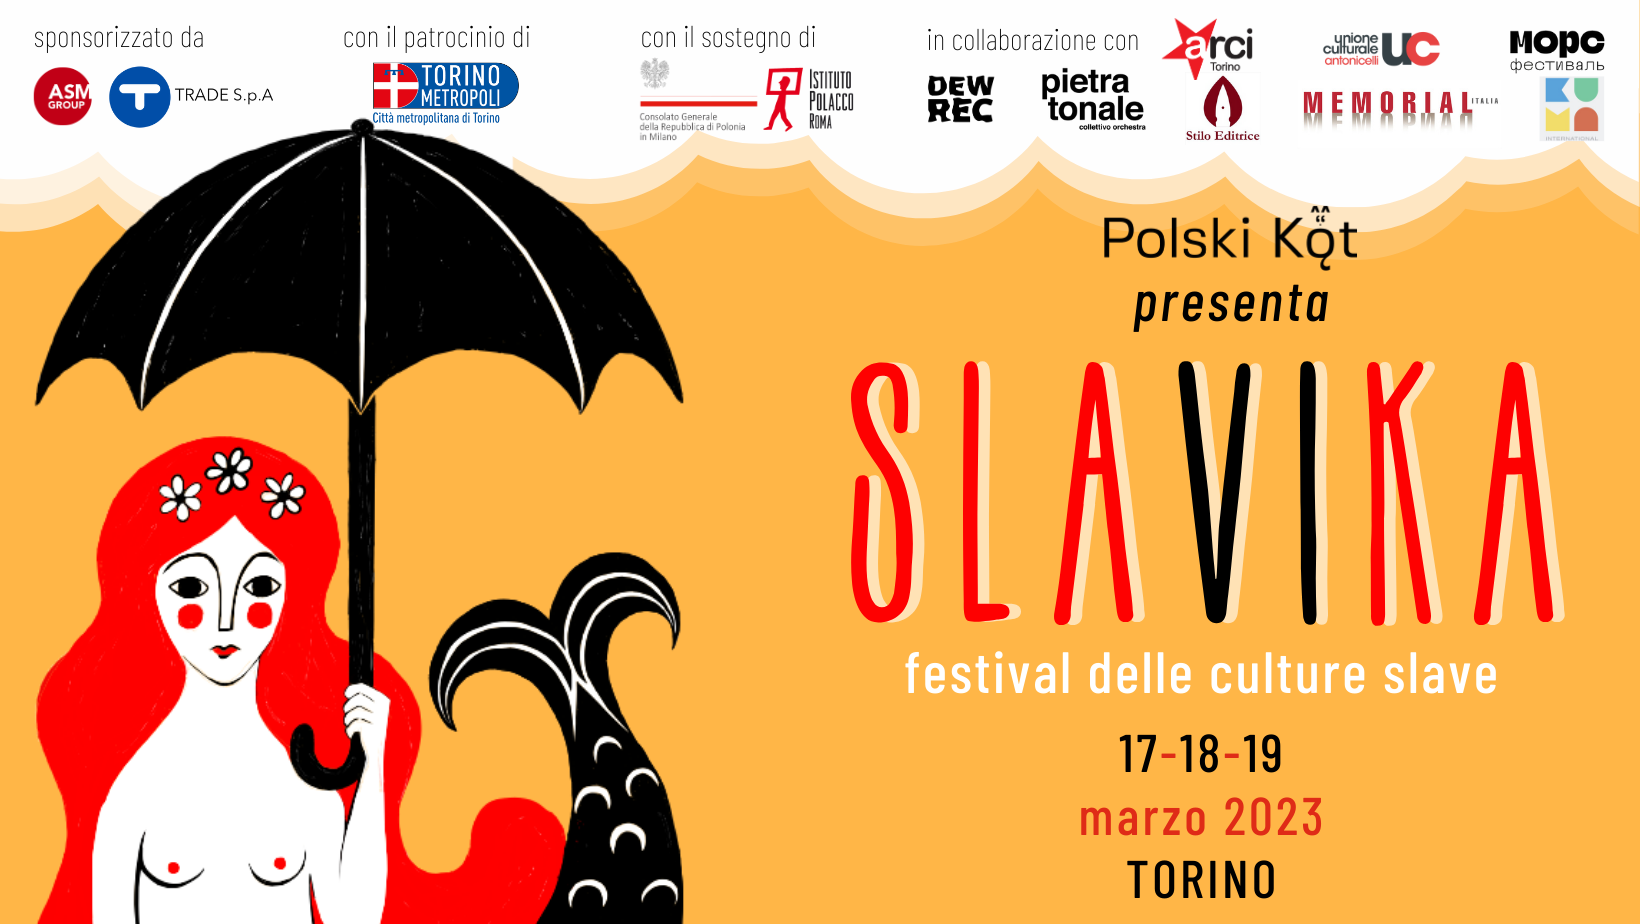 SLAVIKA FESTIVAL 2023. A Torino dal 17 al 19 marzo 